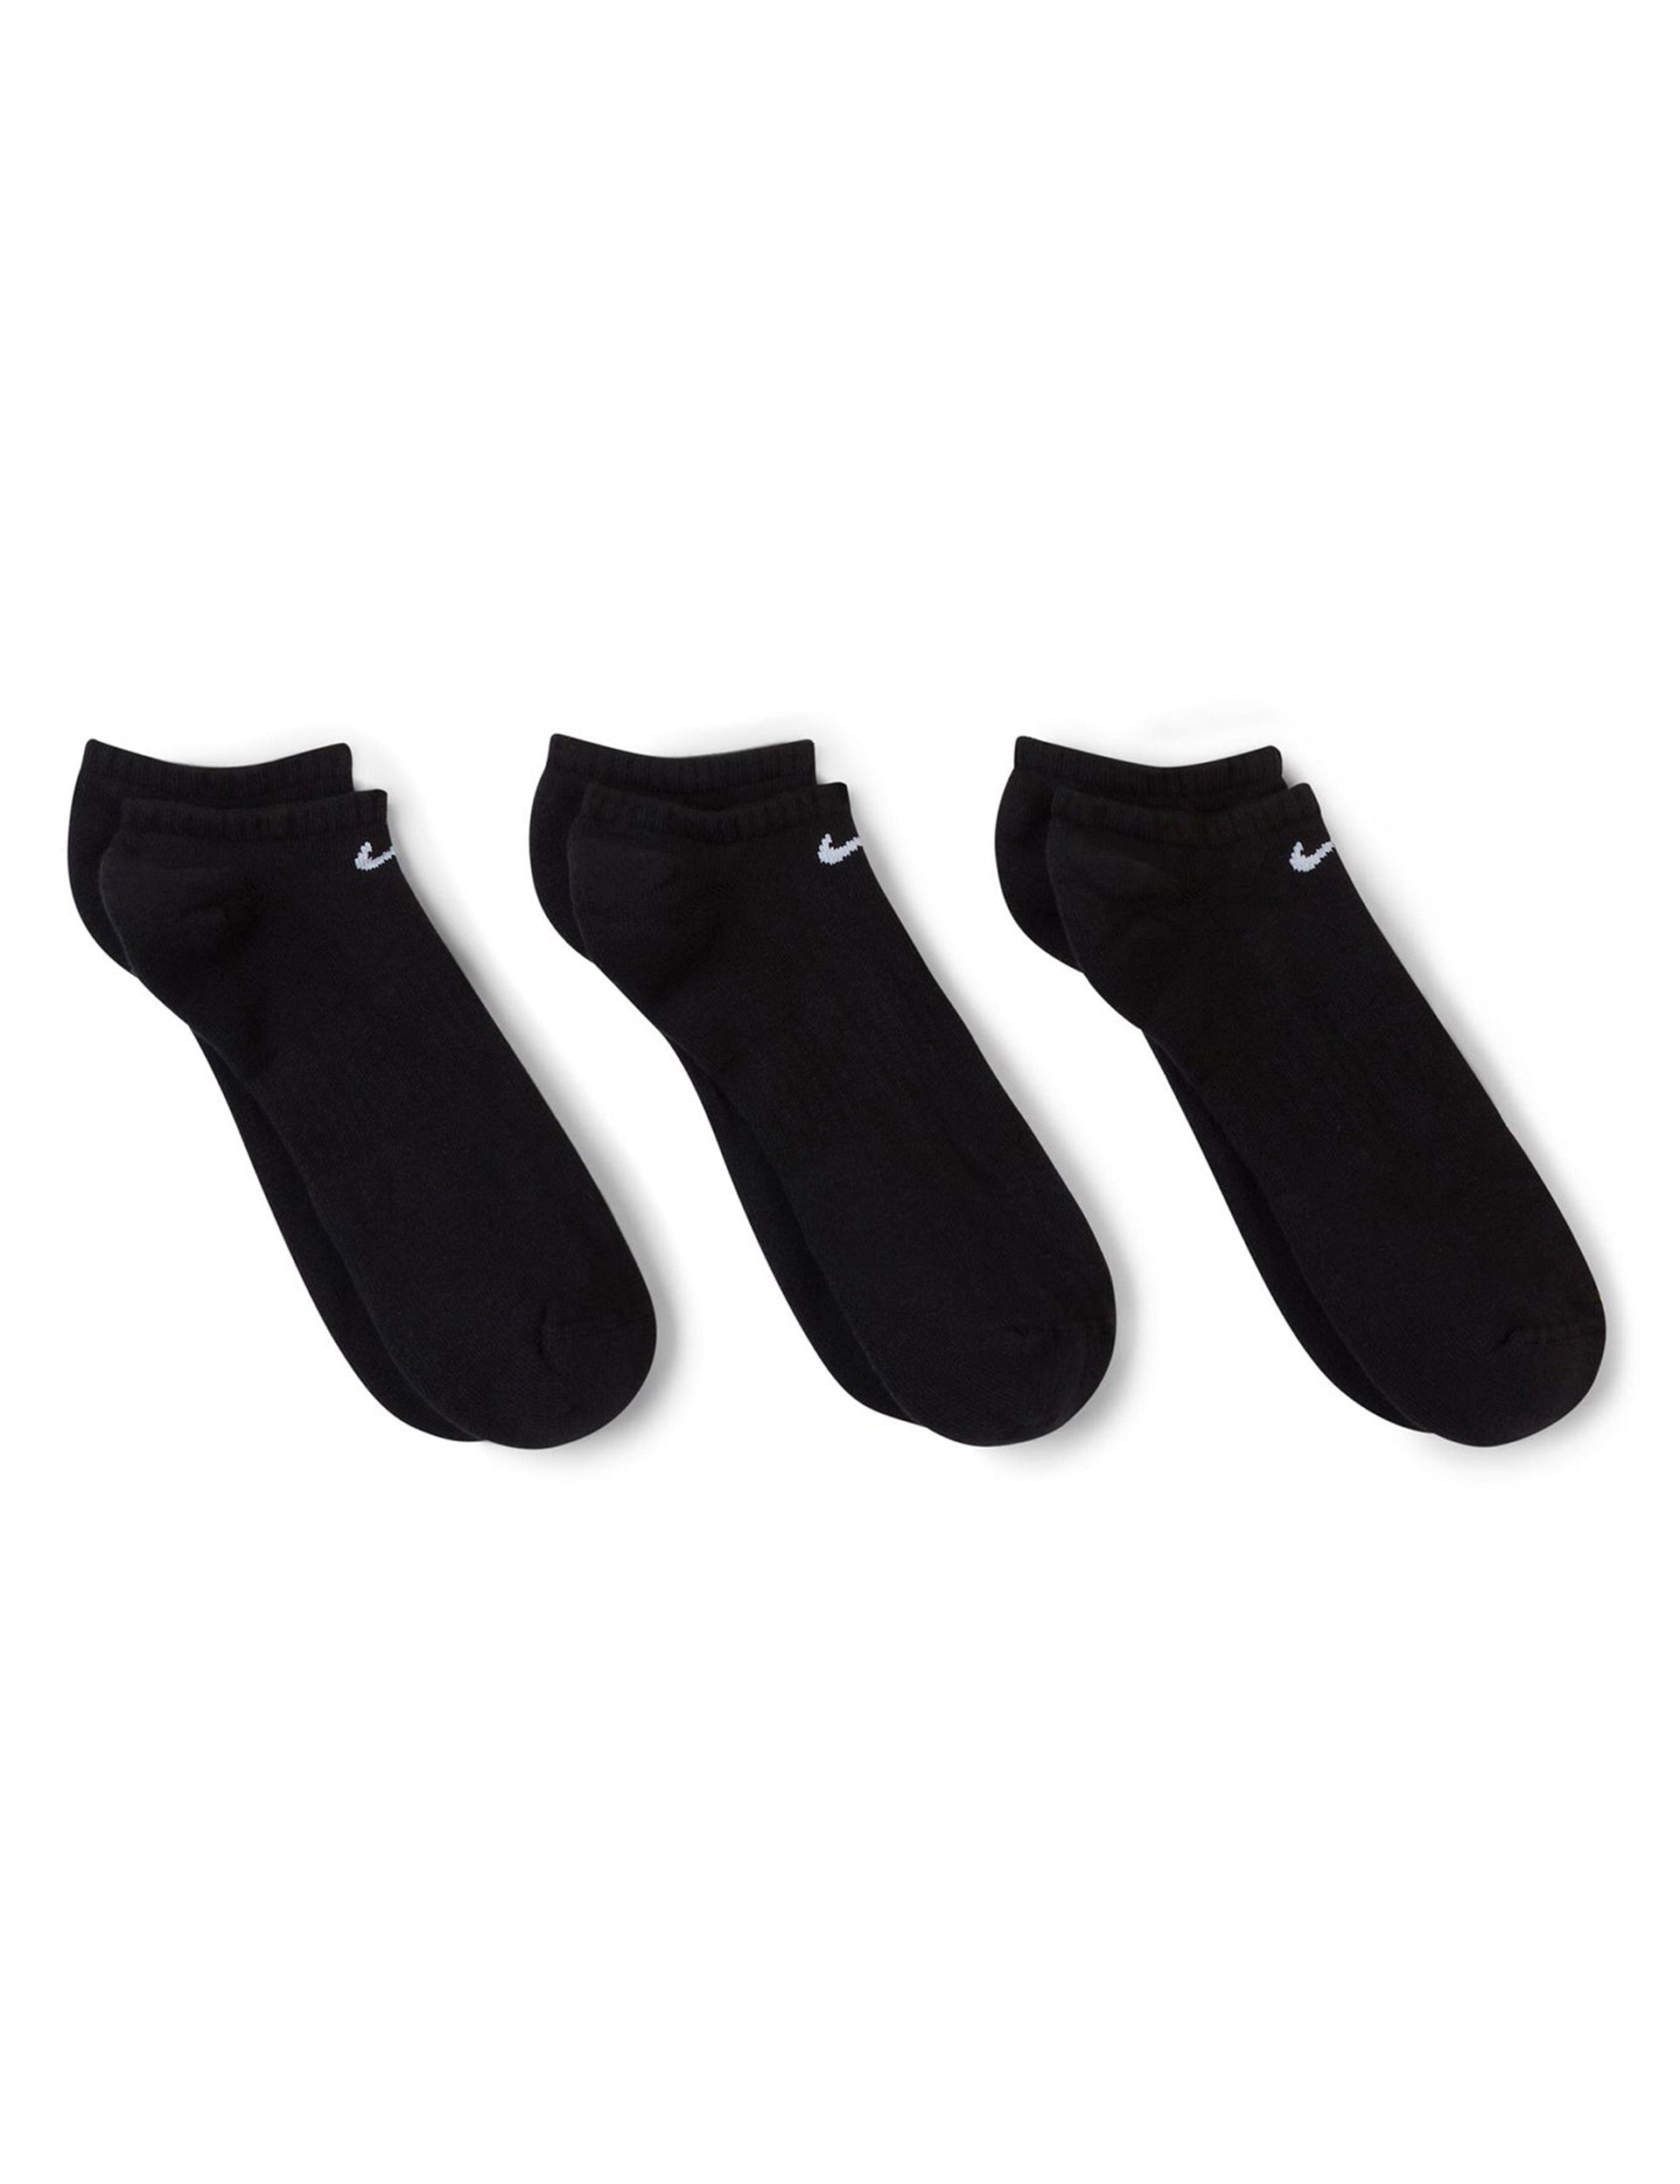 Nike Everyday Cushioned Socks (3 pairs) - Black/Whiteimage4- The Sports Edit